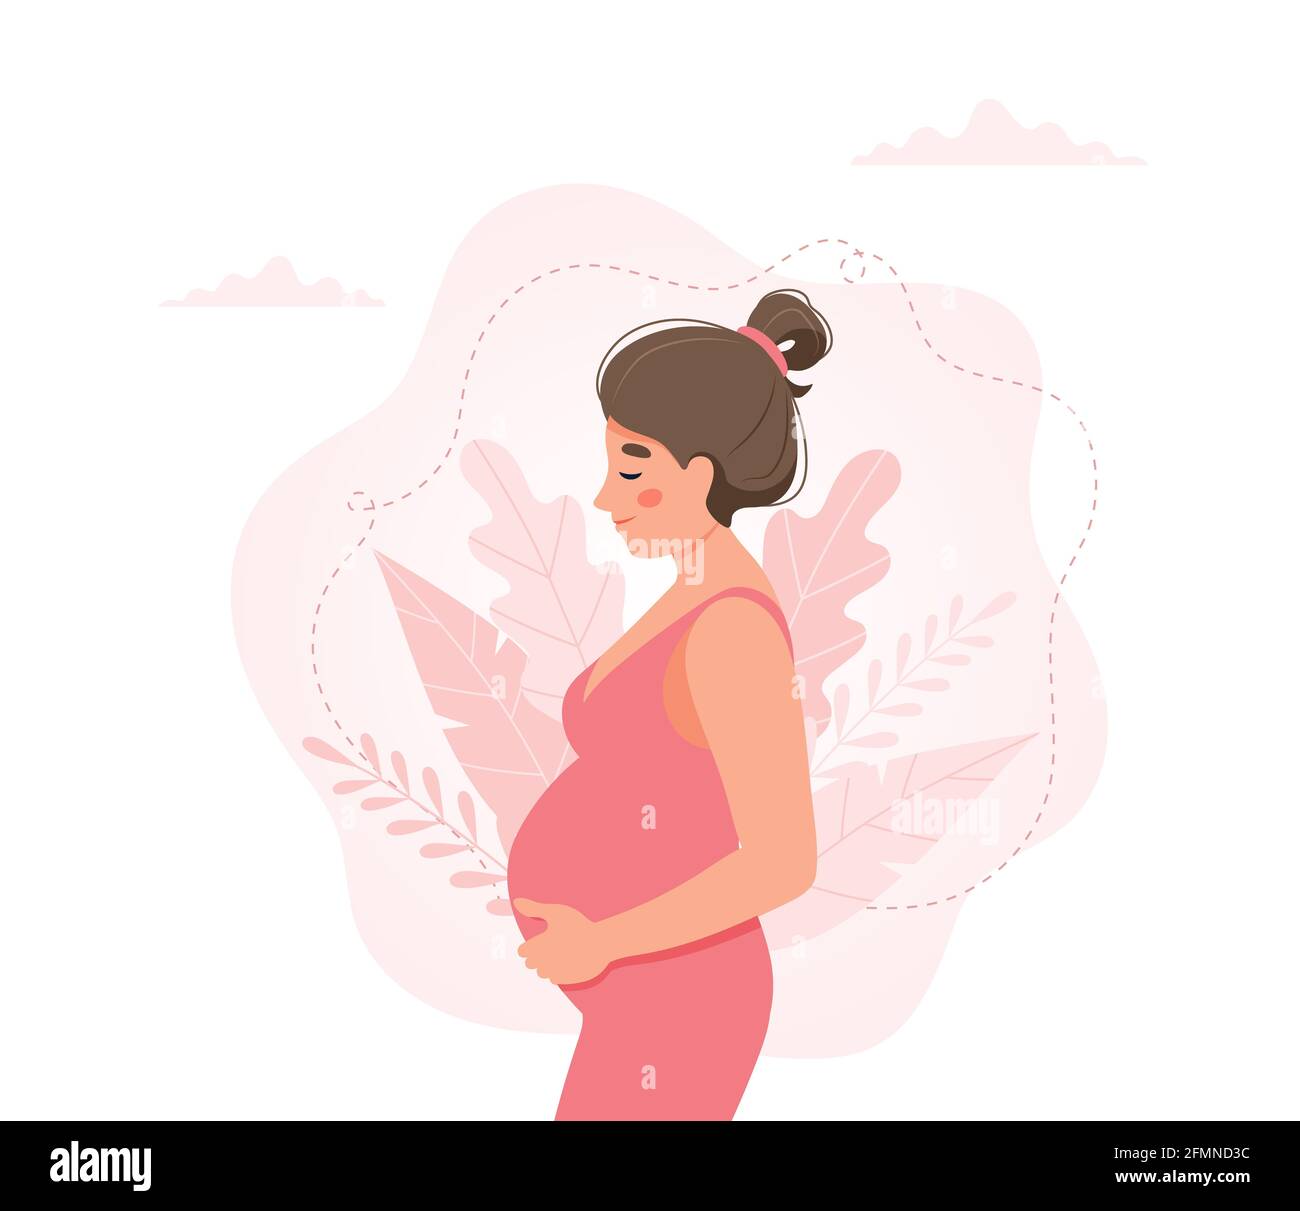 Femme enceinte concept illustration dans le style mignon de dessin animé,  santé, grossesse Photo Stock - Alamy